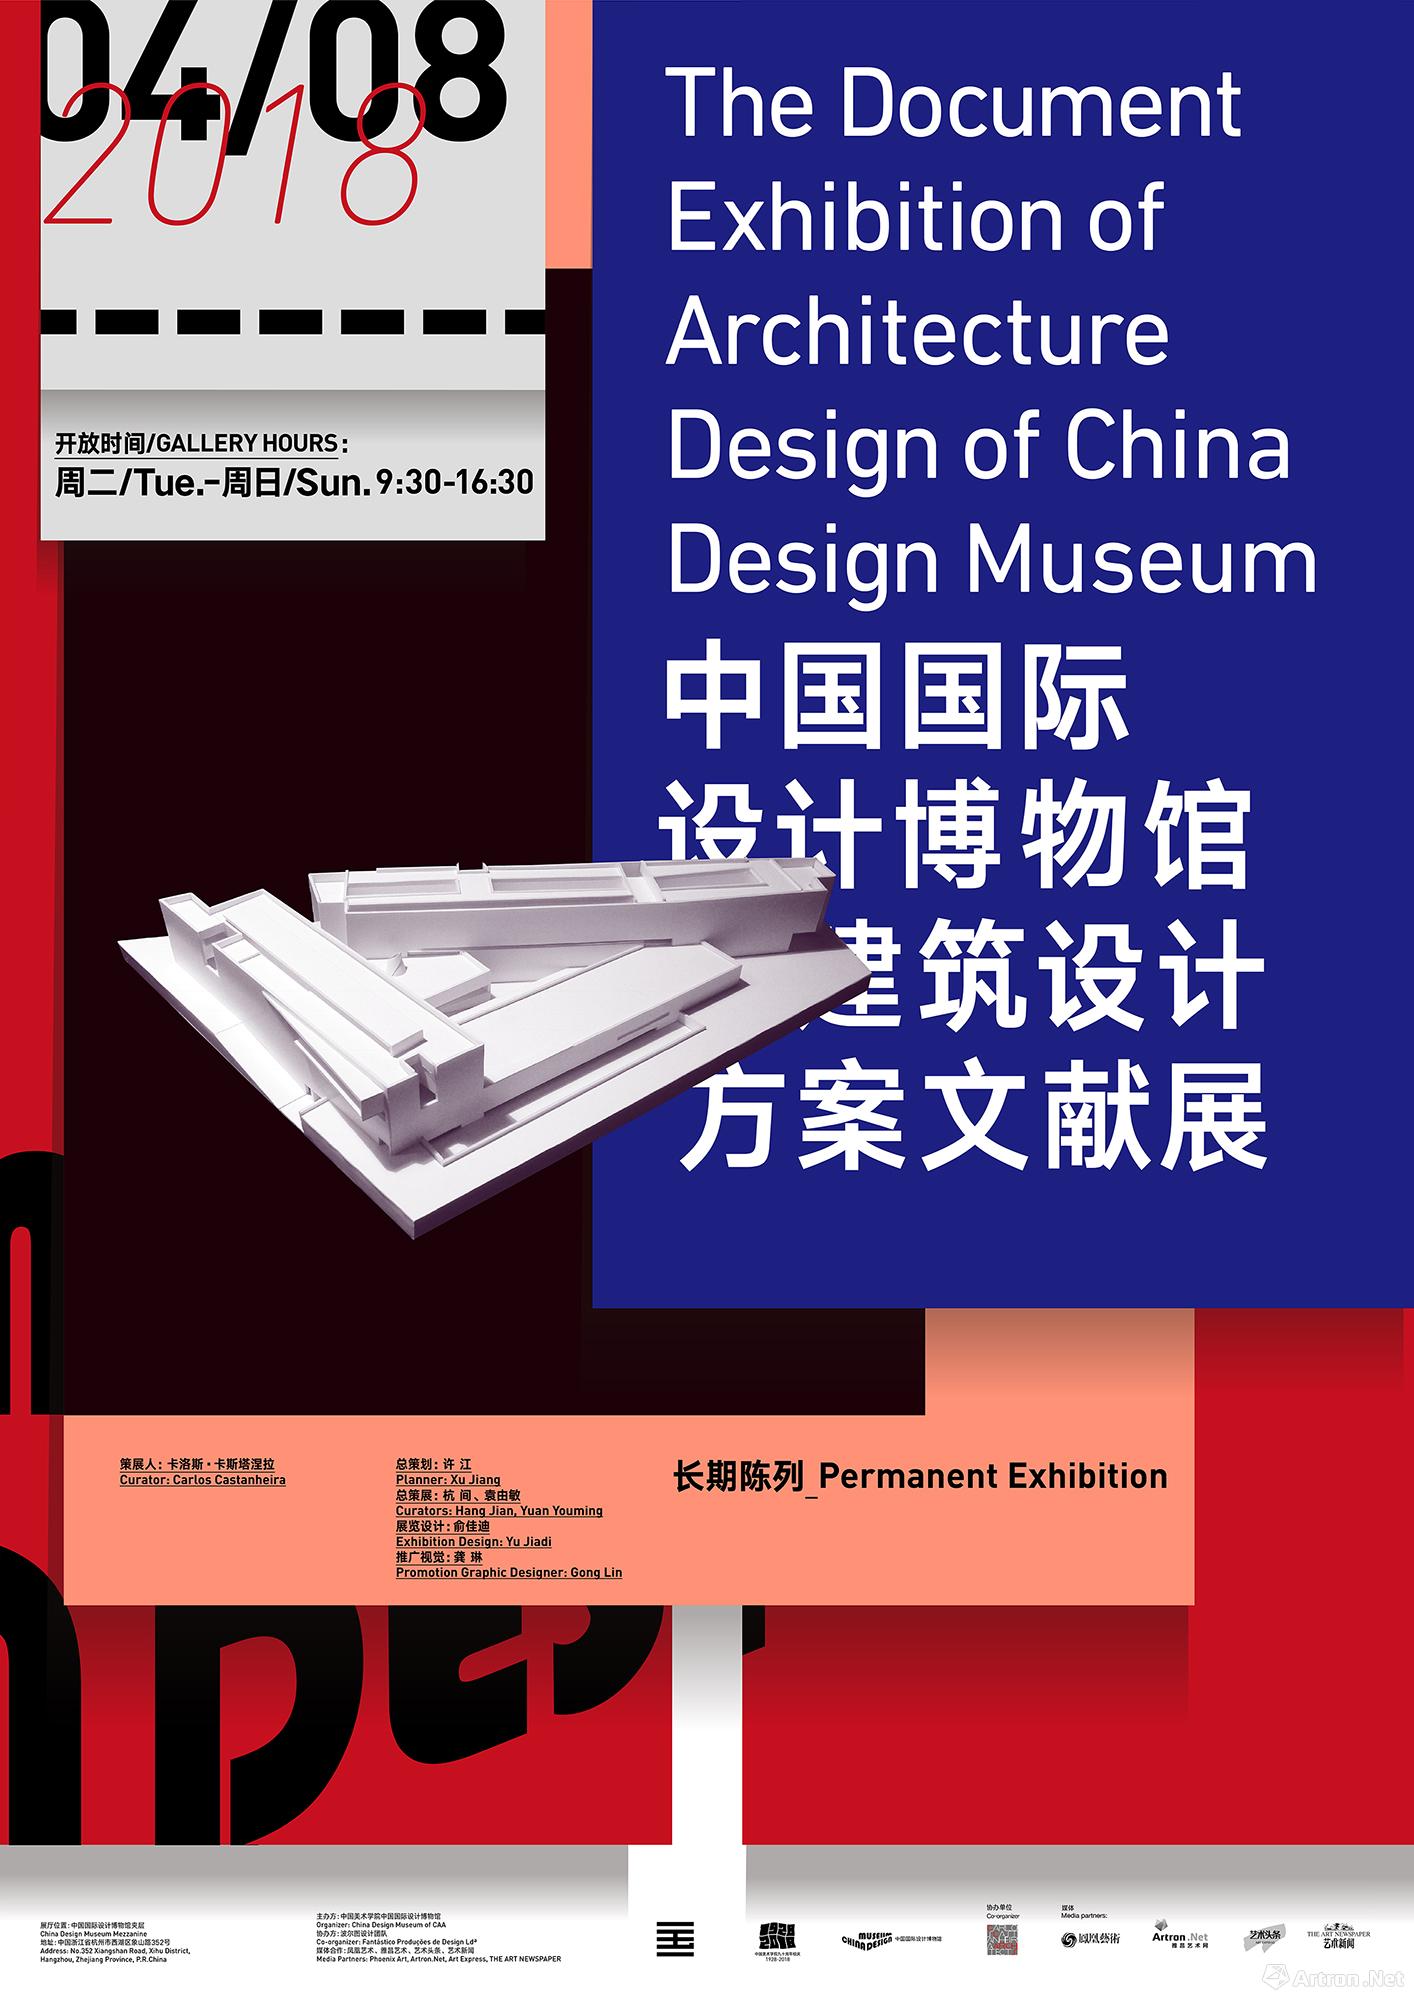 中国国际设计博物馆建筑设计方案文献展